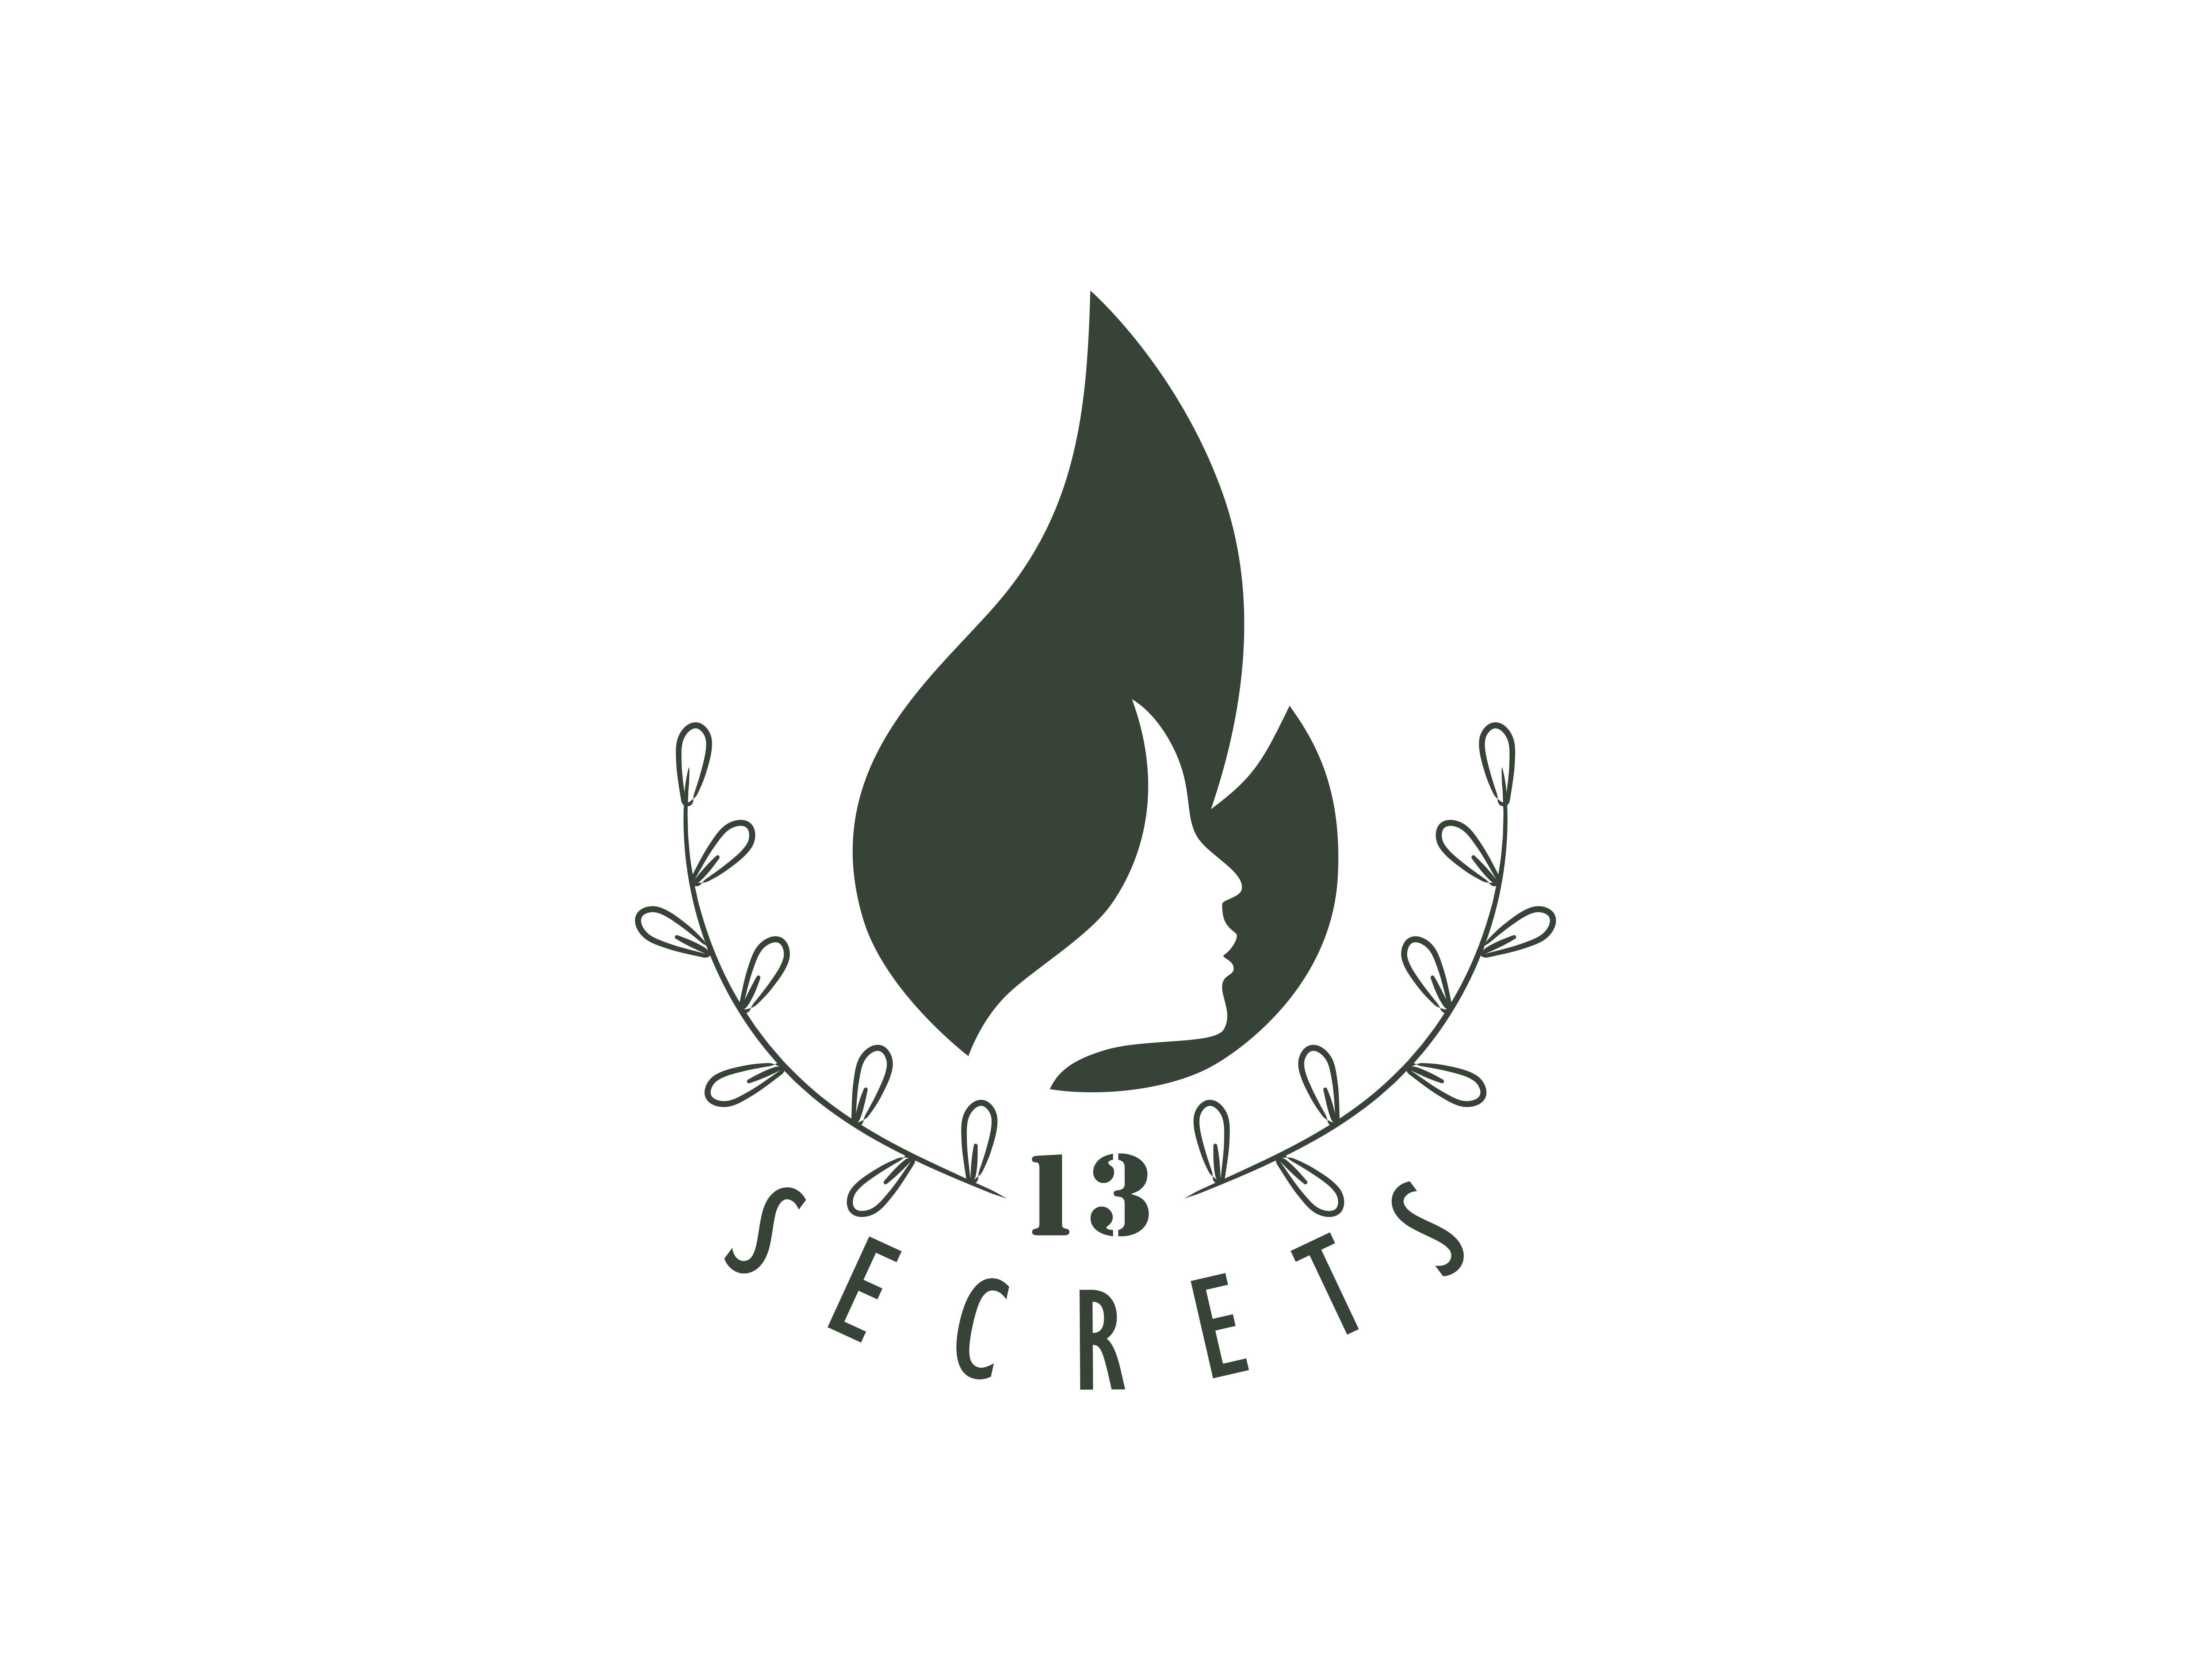 13 Secrets